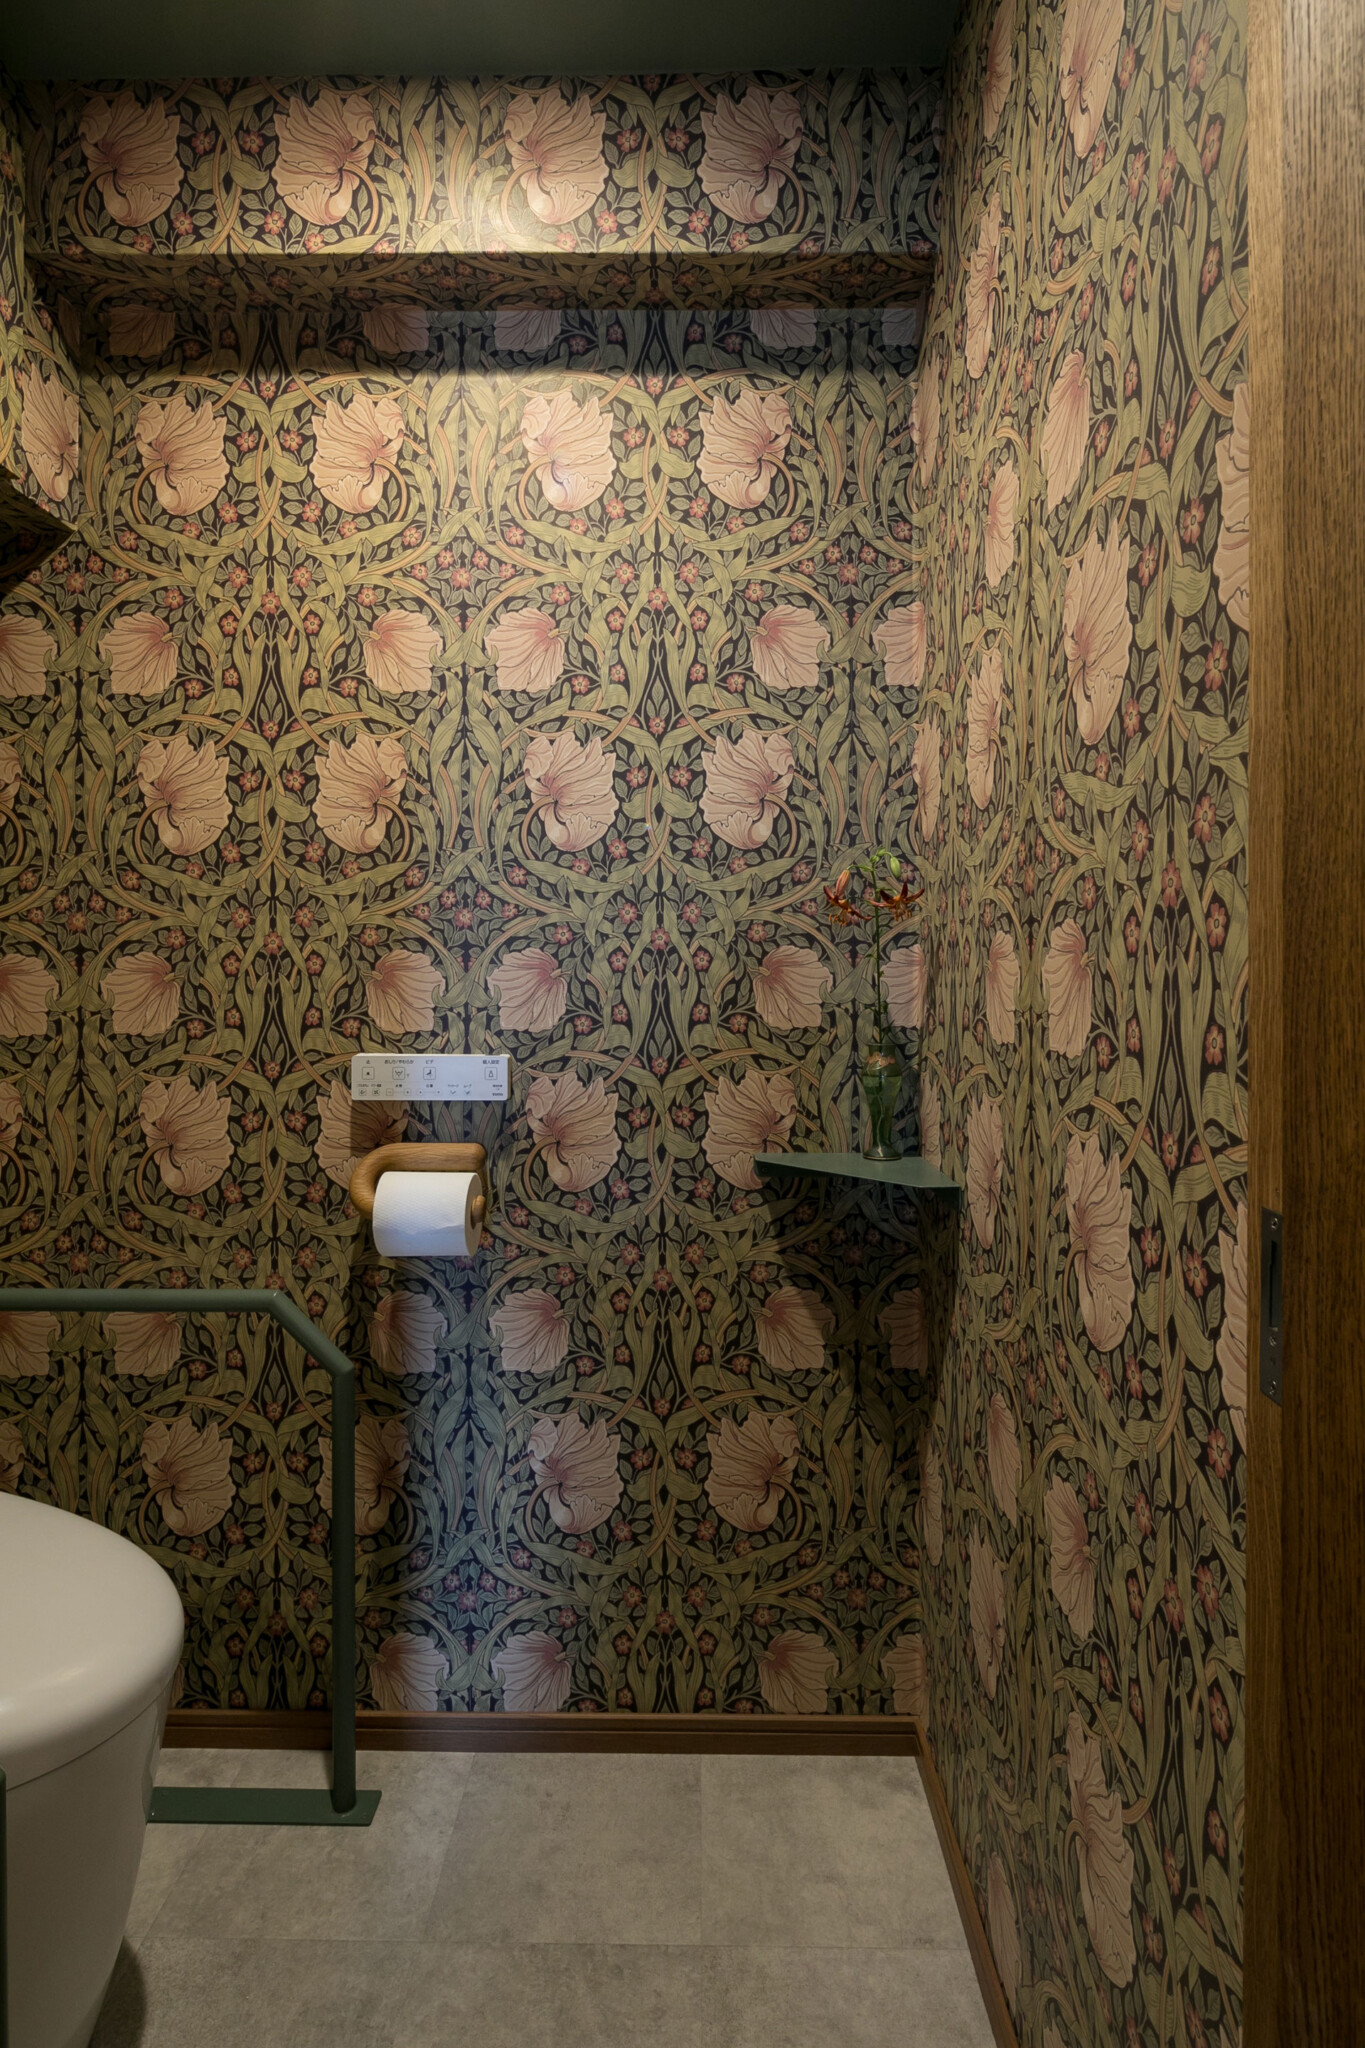 トイレの壁紙はウィリアム・モリス。ぽってりとしたペーパーホルダーが愛らしい。お花を飾る場所も作った。